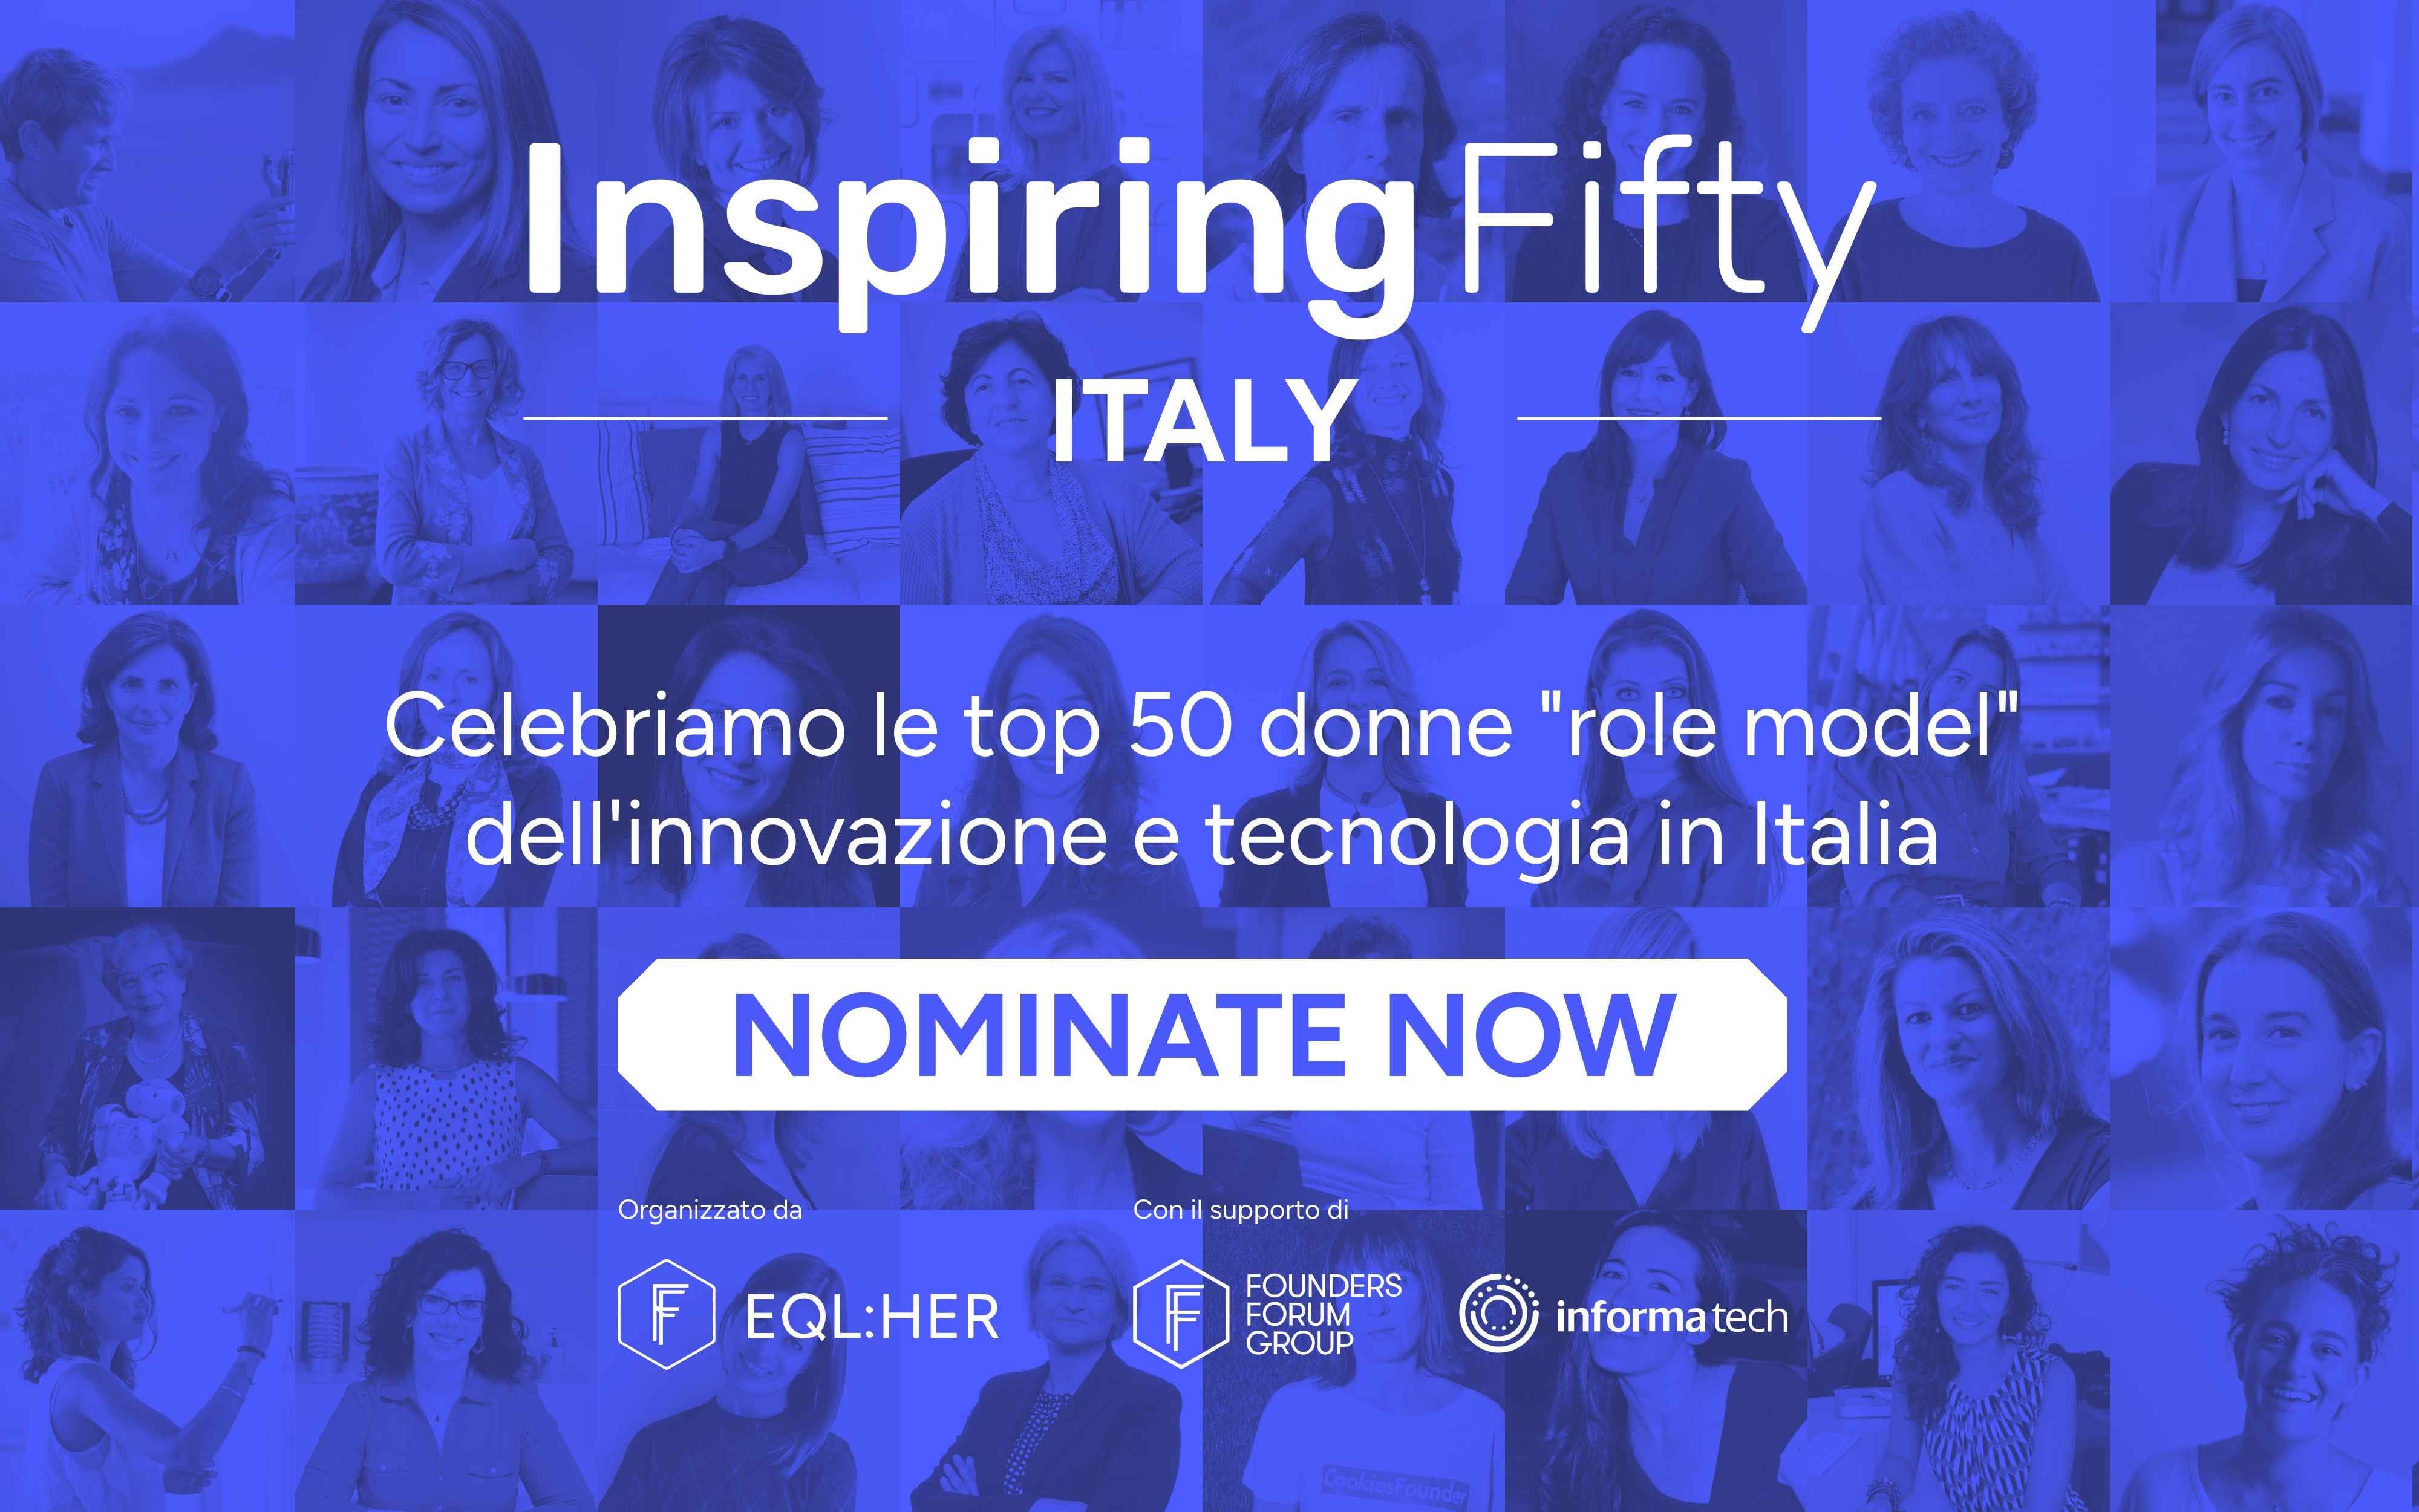 InspiringFifty Italy